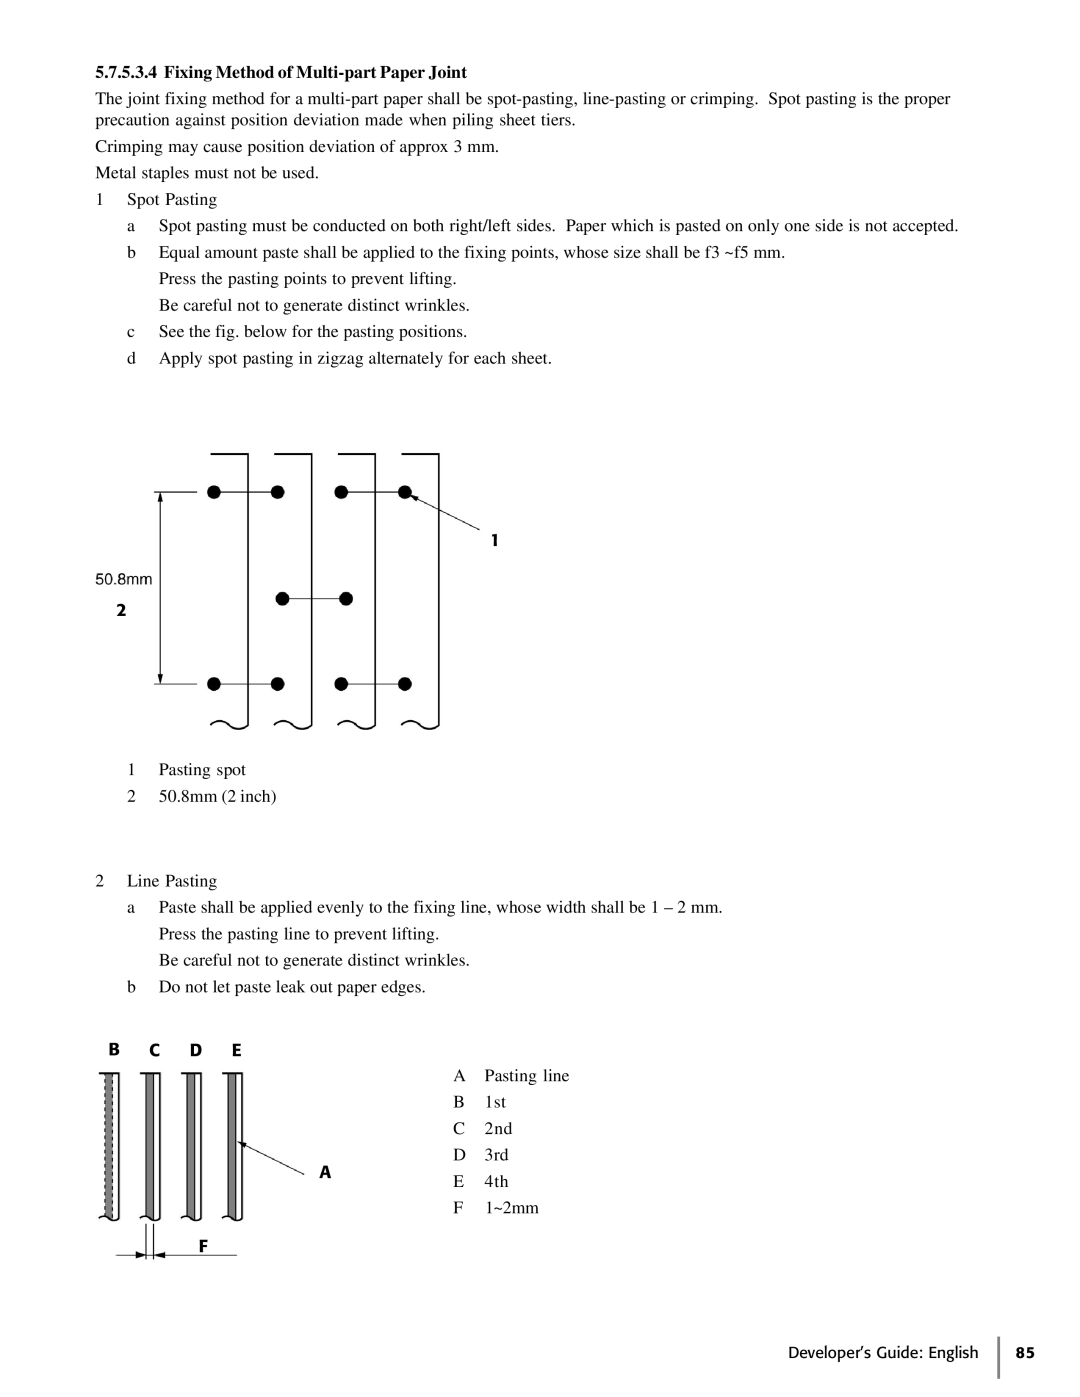 Oki 425D manual Fixing Method of Multi-part Paper Joint, B C D E 